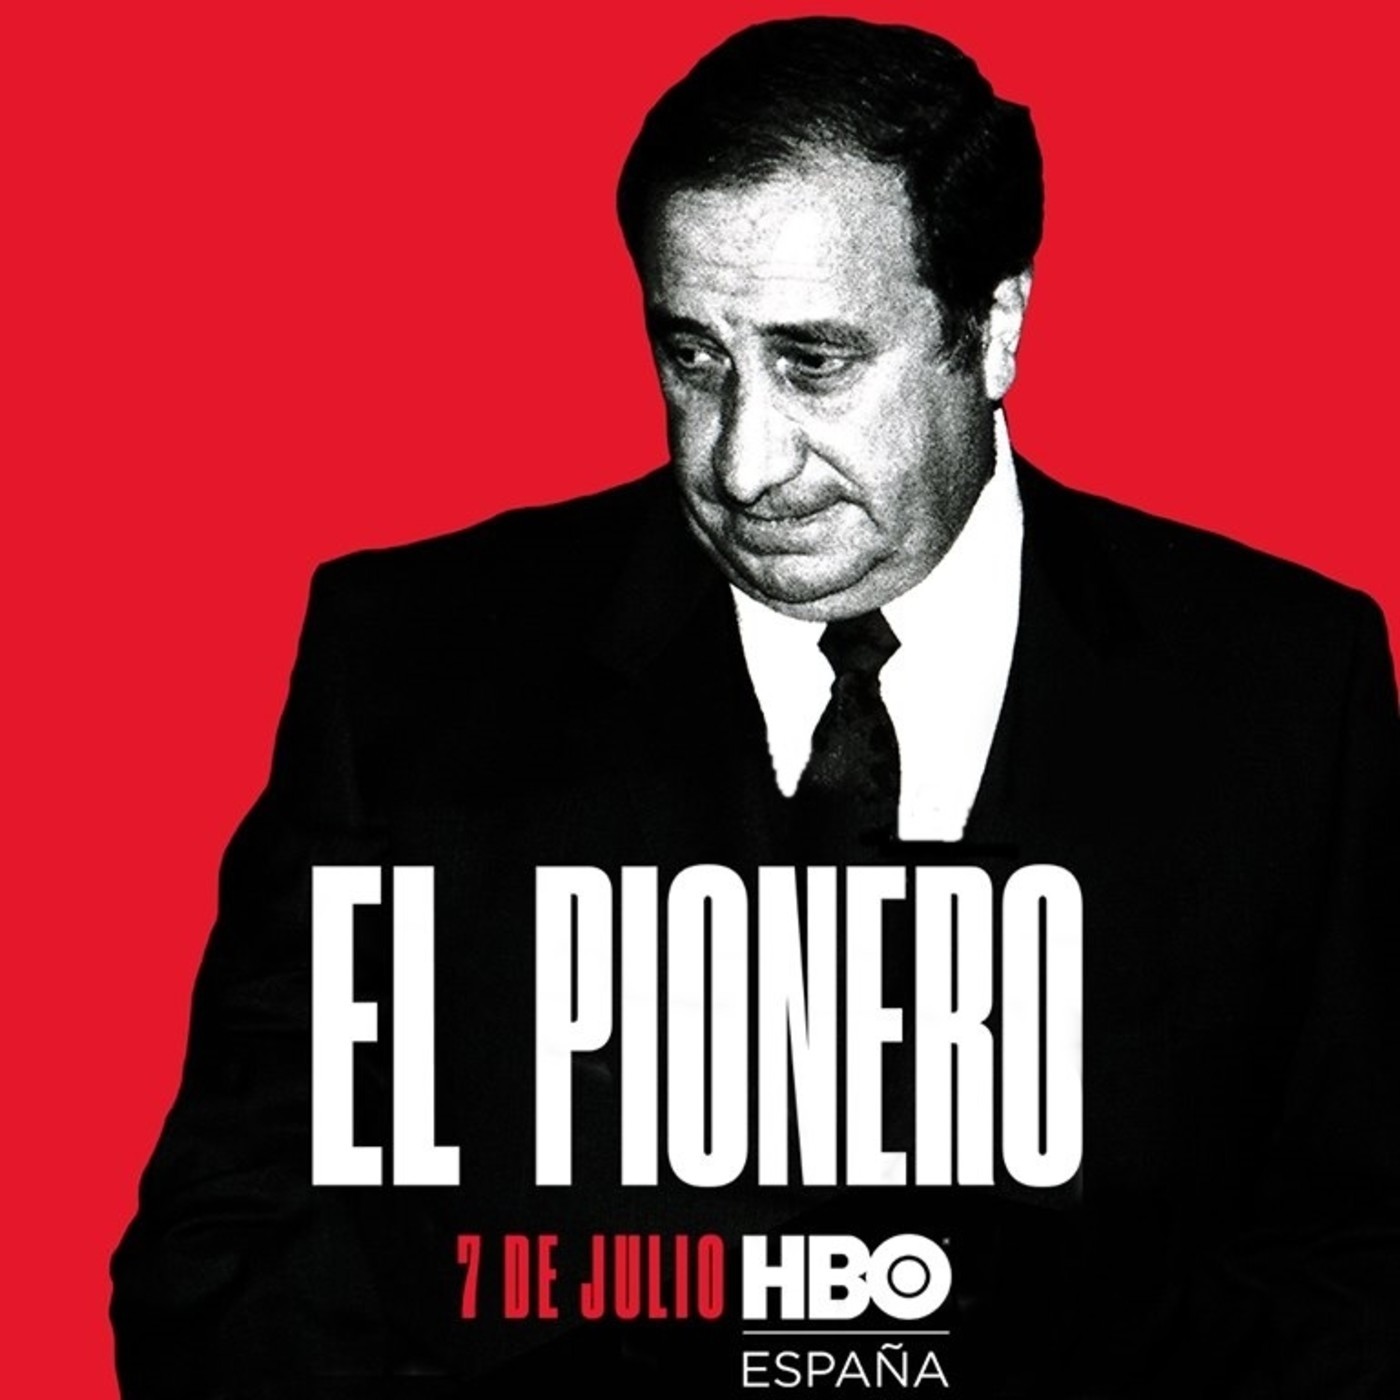 El Pionero (07/07/2019) HBO España